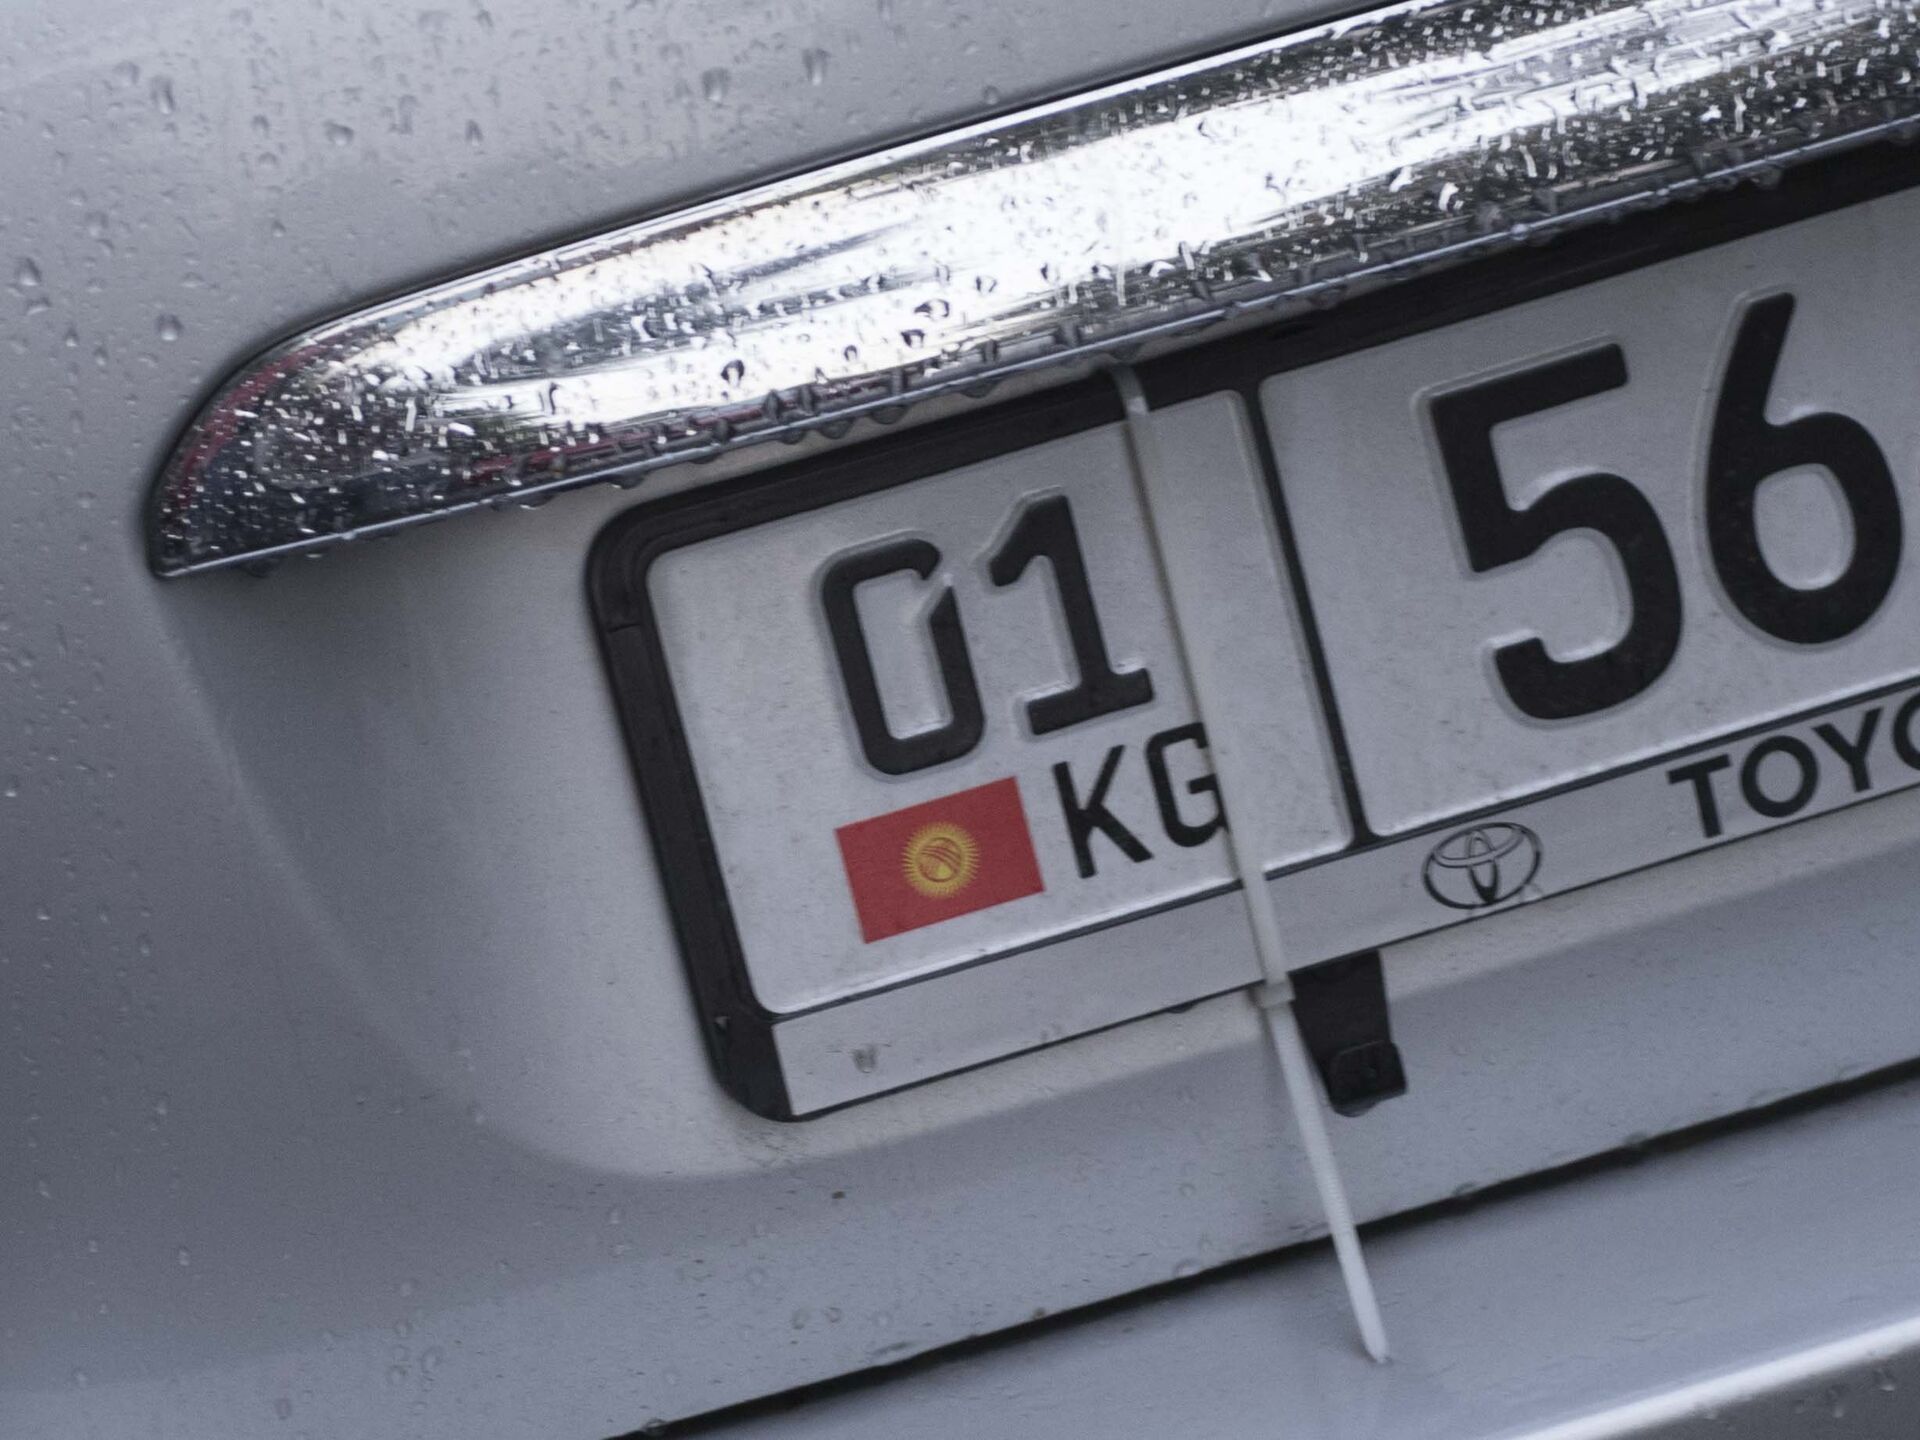 Можно ездить на киргизских номерах. Автомобильные номера Киргизии. Иностранные автомобильные номера. Гос номер Кыргызстана. Киргизия номера машин.